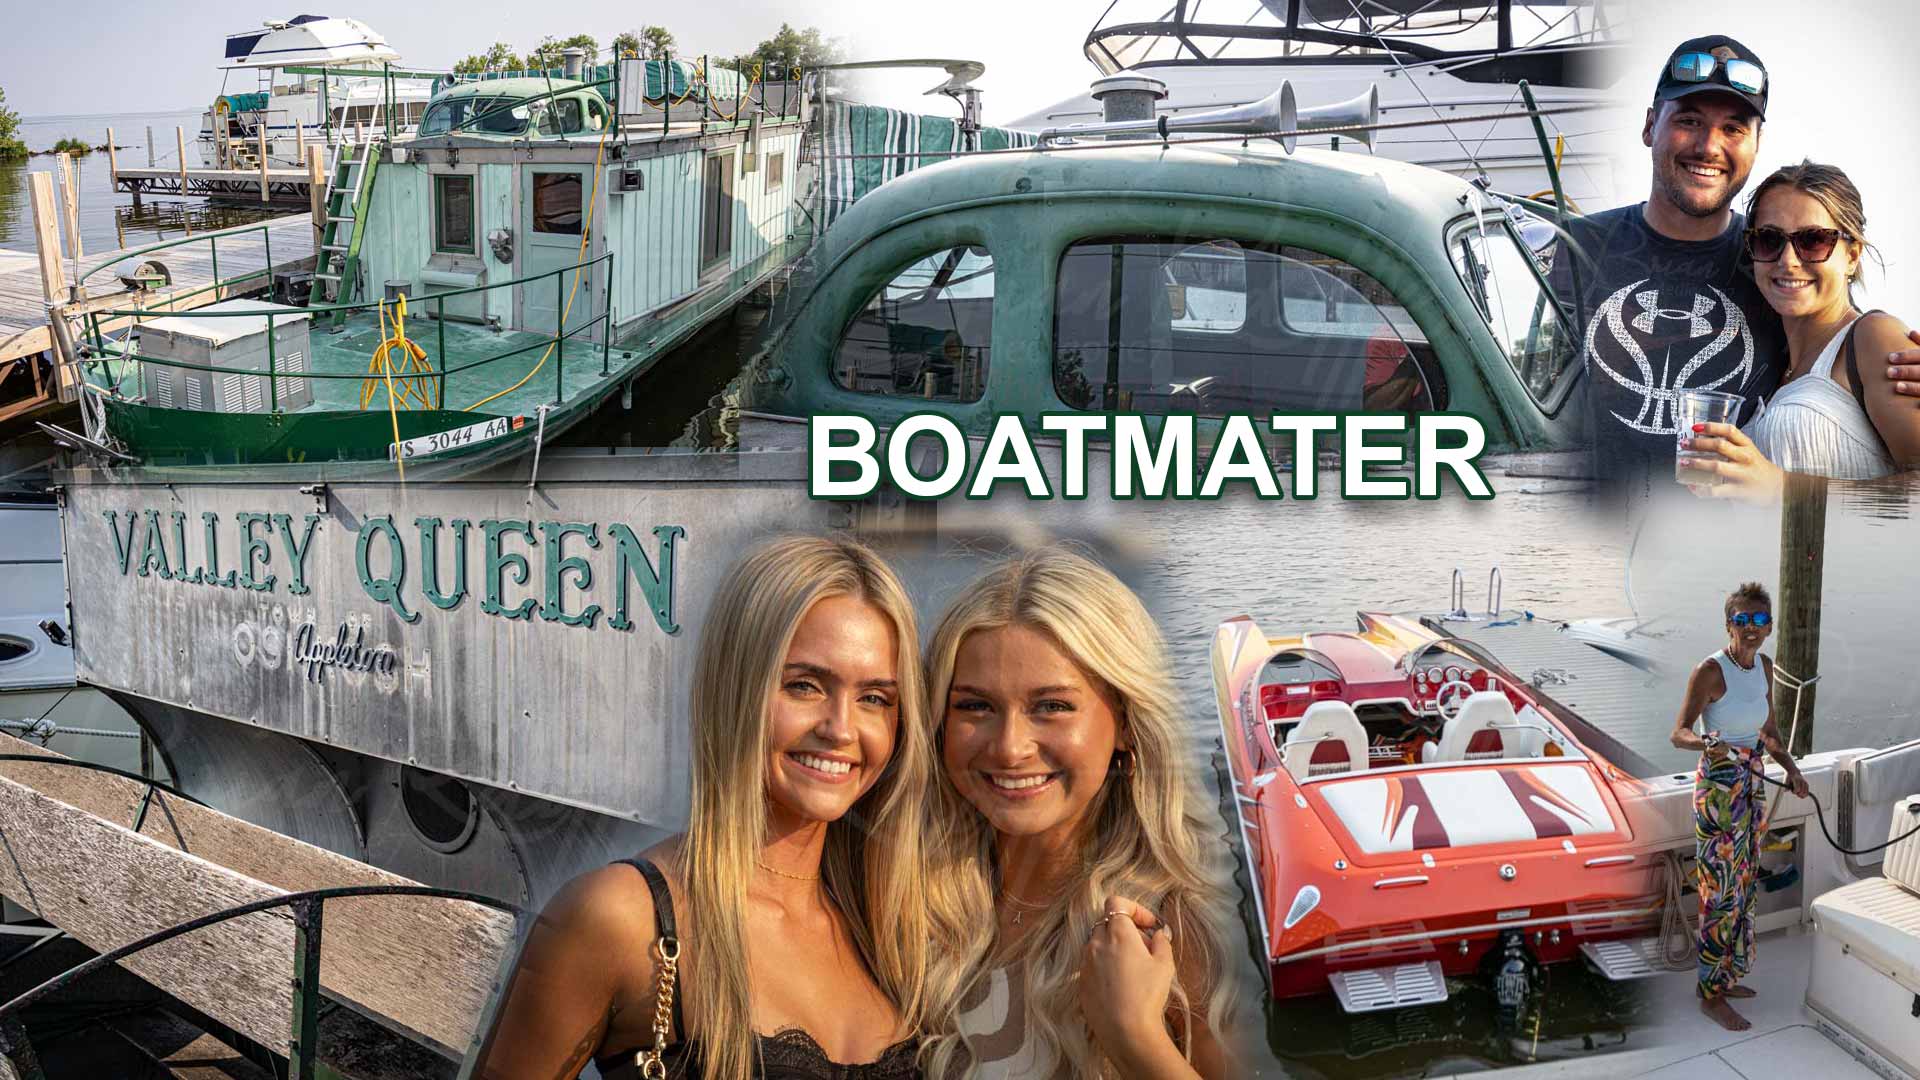 BoatMater is alive in Oshkosh